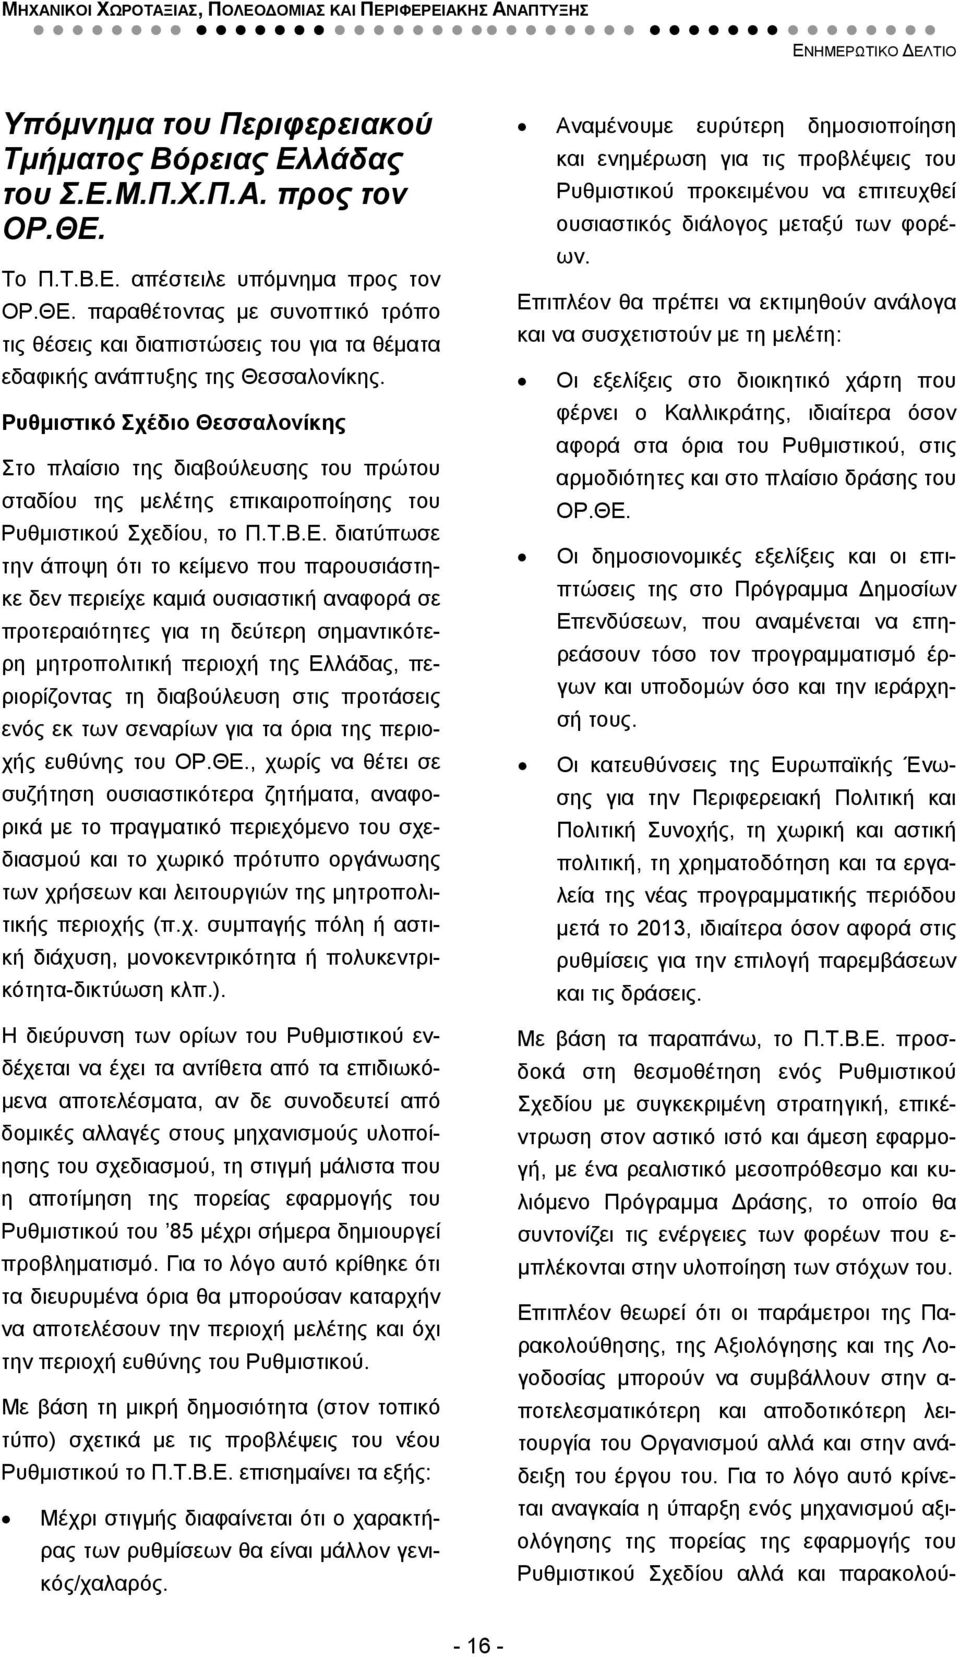 Ρυθμιστικό Σχέδιο Θεσσαλονίκης Στο πλαίσιο της διαβούλευσης του πρώτου σταδίου της μελέτης επικαιροποίησης του Ρυθμιστικού Σχεδίου, το Π.Τ.Β.Ε.